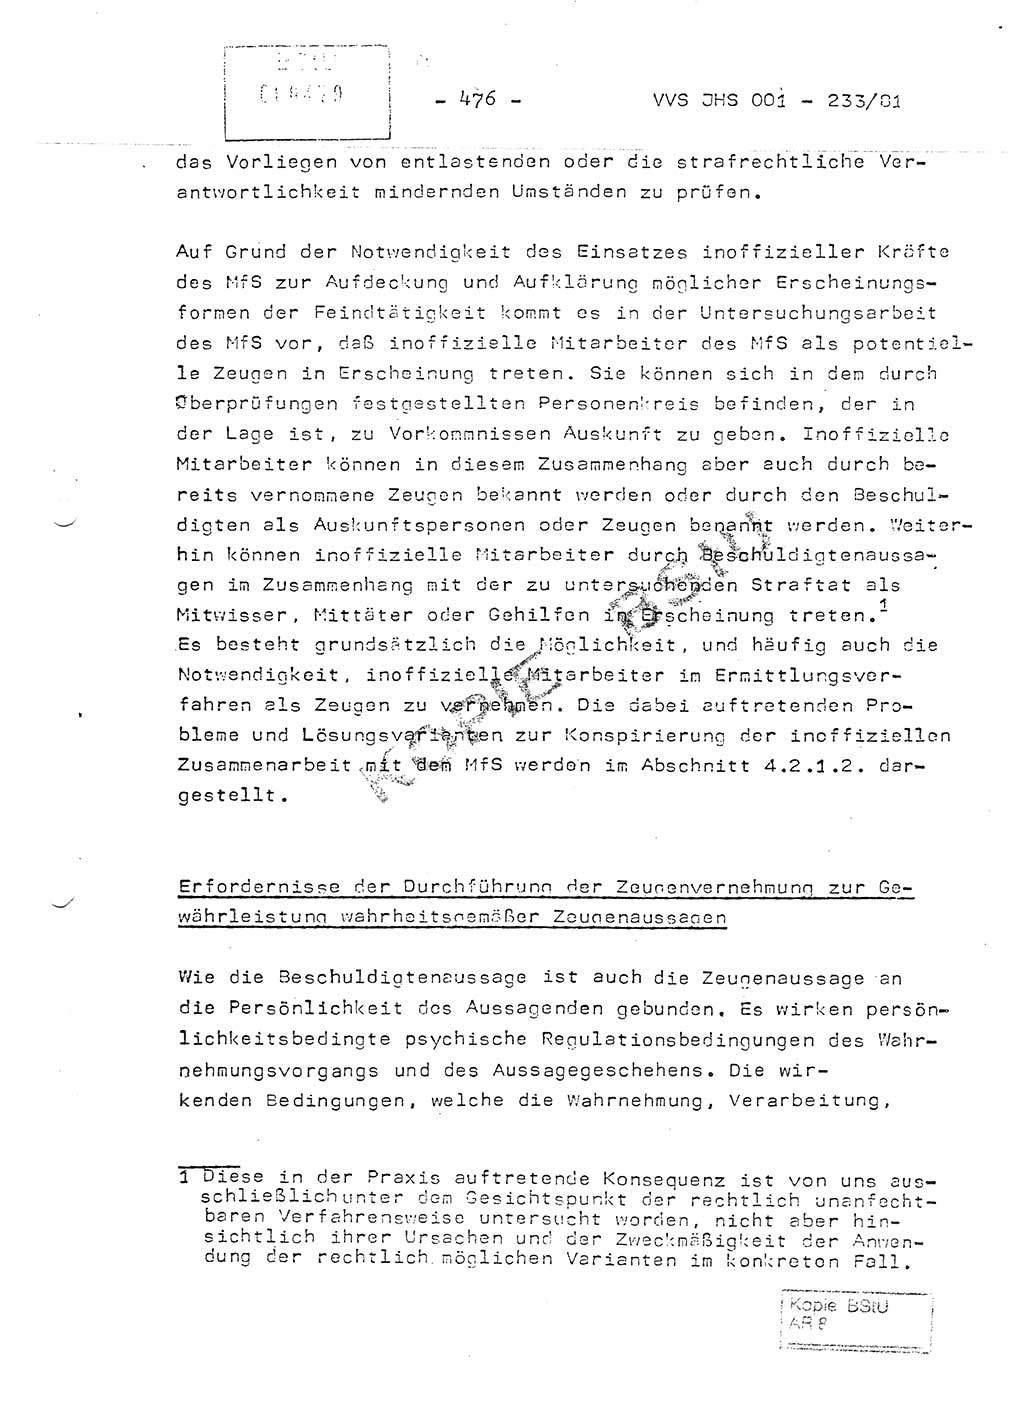 Dissertation Oberstleutnant Horst Zank (JHS), Oberstleutnant Dr. Karl-Heinz Knoblauch (JHS), Oberstleutnant Gustav-Adolf Kowalewski (HA Ⅸ), Oberstleutnant Wolfgang Plötner (HA Ⅸ), Ministerium für Staatssicherheit (MfS) [Deutsche Demokratische Republik (DDR)], Juristische Hochschule (JHS), Vertrauliche Verschlußsache (VVS) o001-233/81, Potsdam 1981, Blatt 476 (Diss. MfS DDR JHS VVS o001-233/81 1981, Bl. 476)